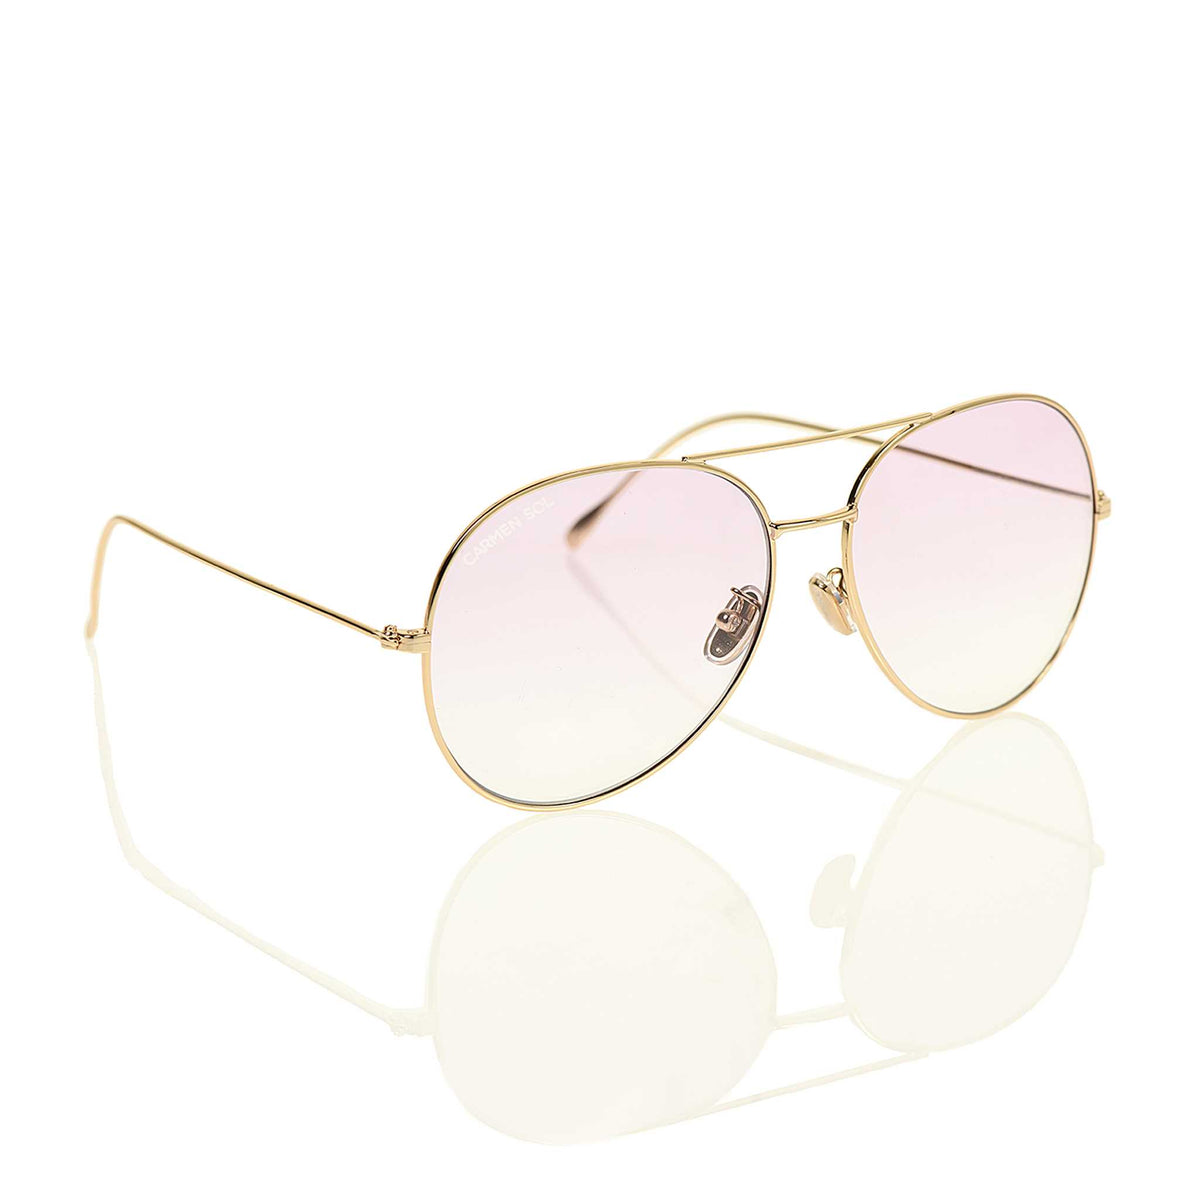 Best aviator sunglasses for women